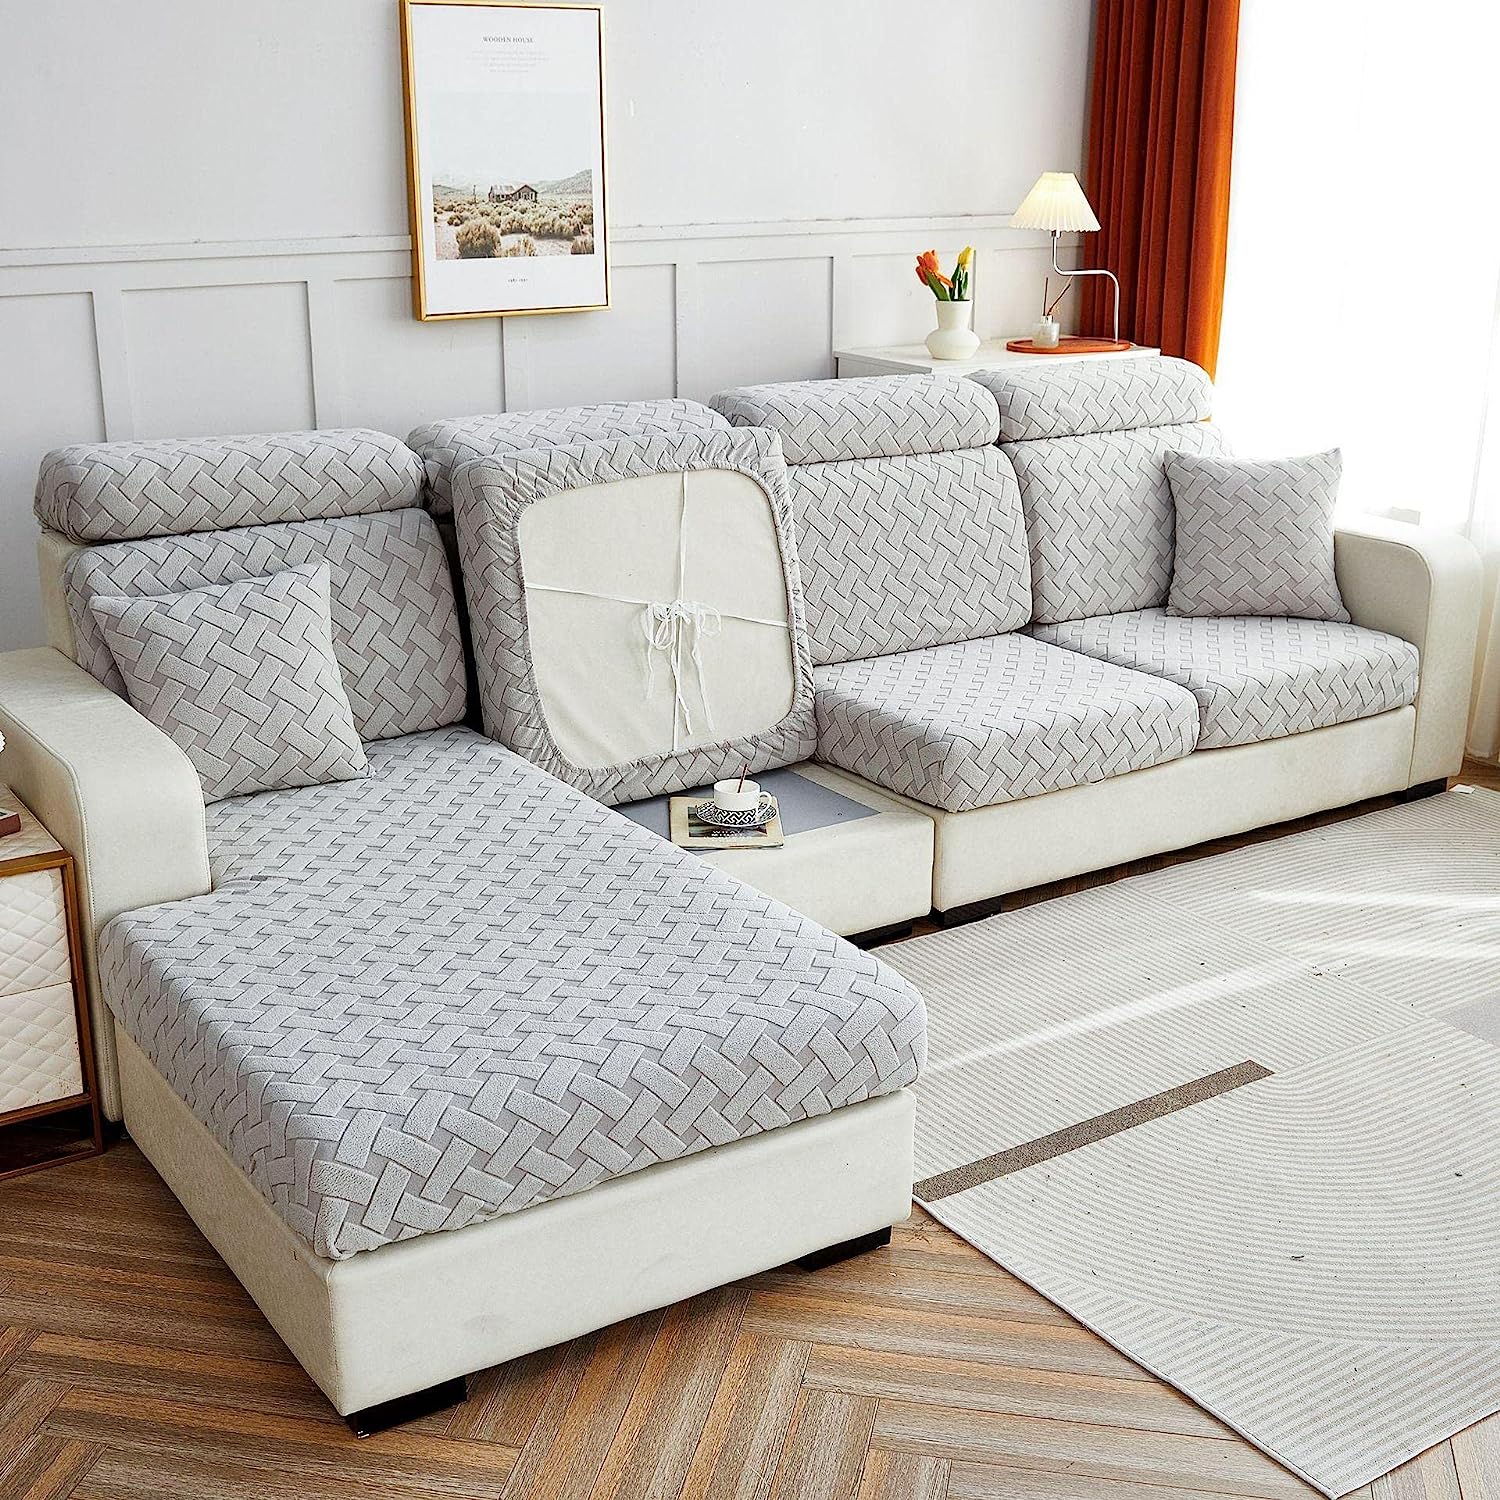 Sofa Cushion Cover - Dove Grey - Soft Elastic Jacquard Weave